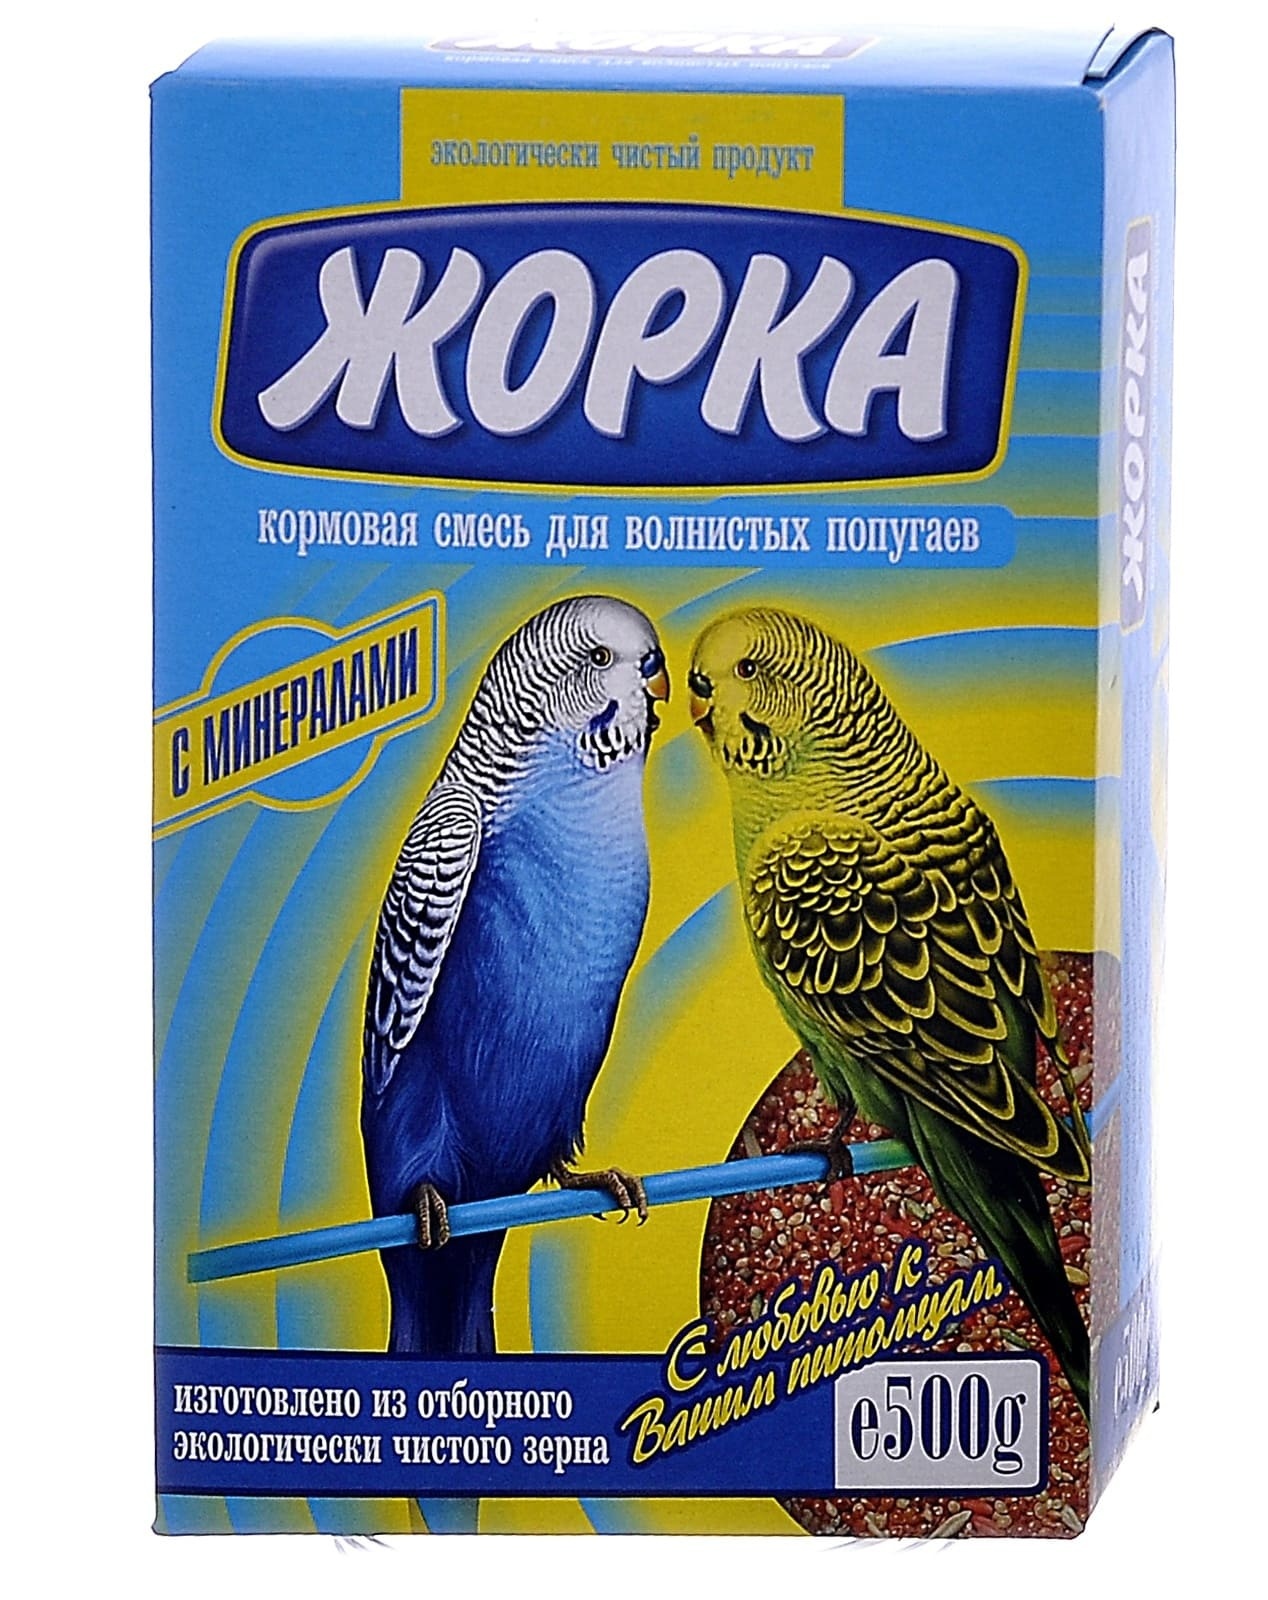 жорка жорка lux для волнистых попугаев экстра пакет 450 г Жорка Жорка для волнистых попугаев с минералами (коробка) (500 г)